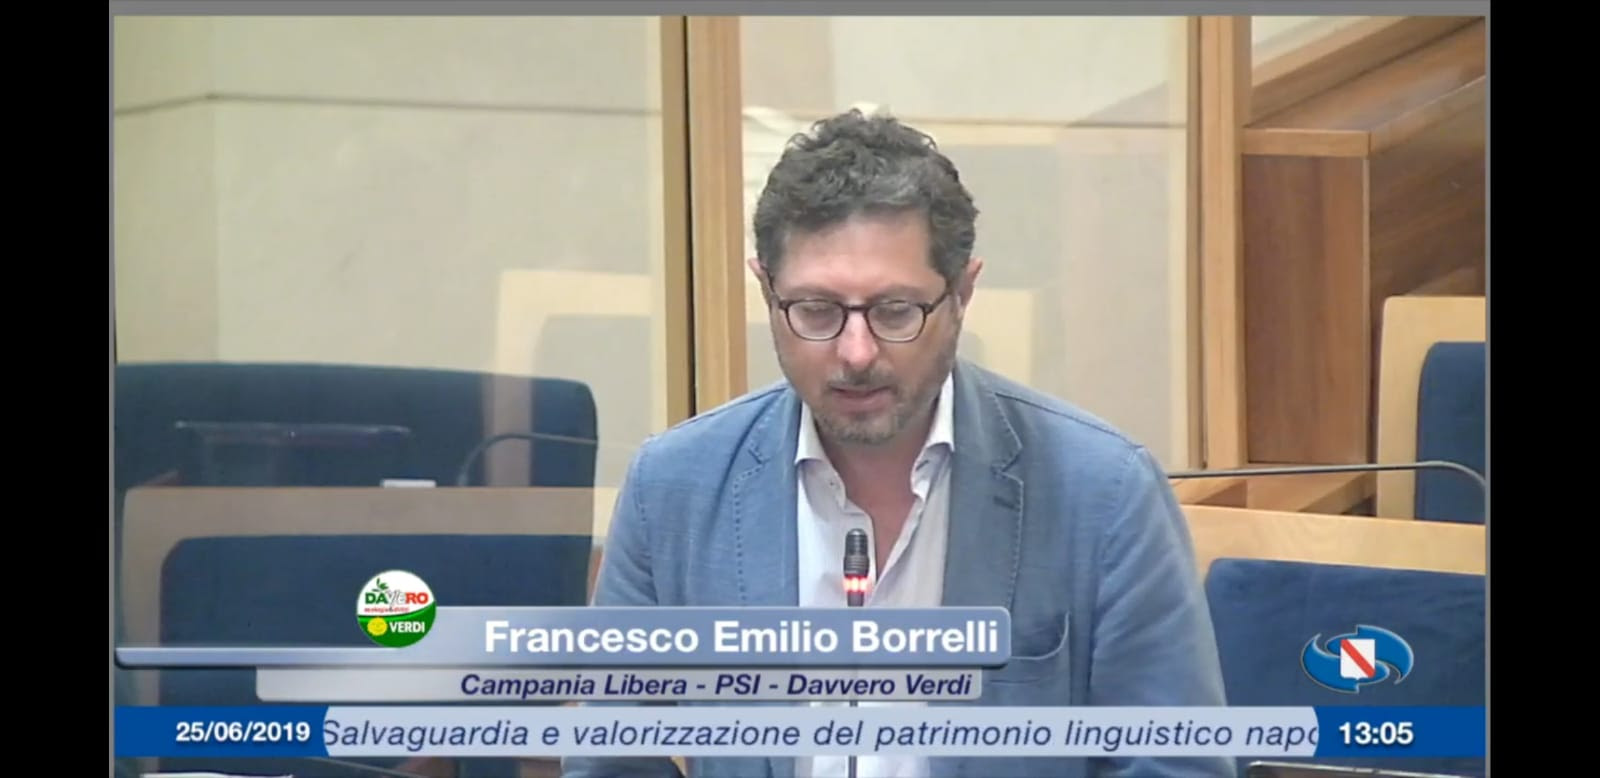 Approvata all’unanimità la legge sulla tutela e la promozione della lingua napoletana proposta dal consigliere Borrelli